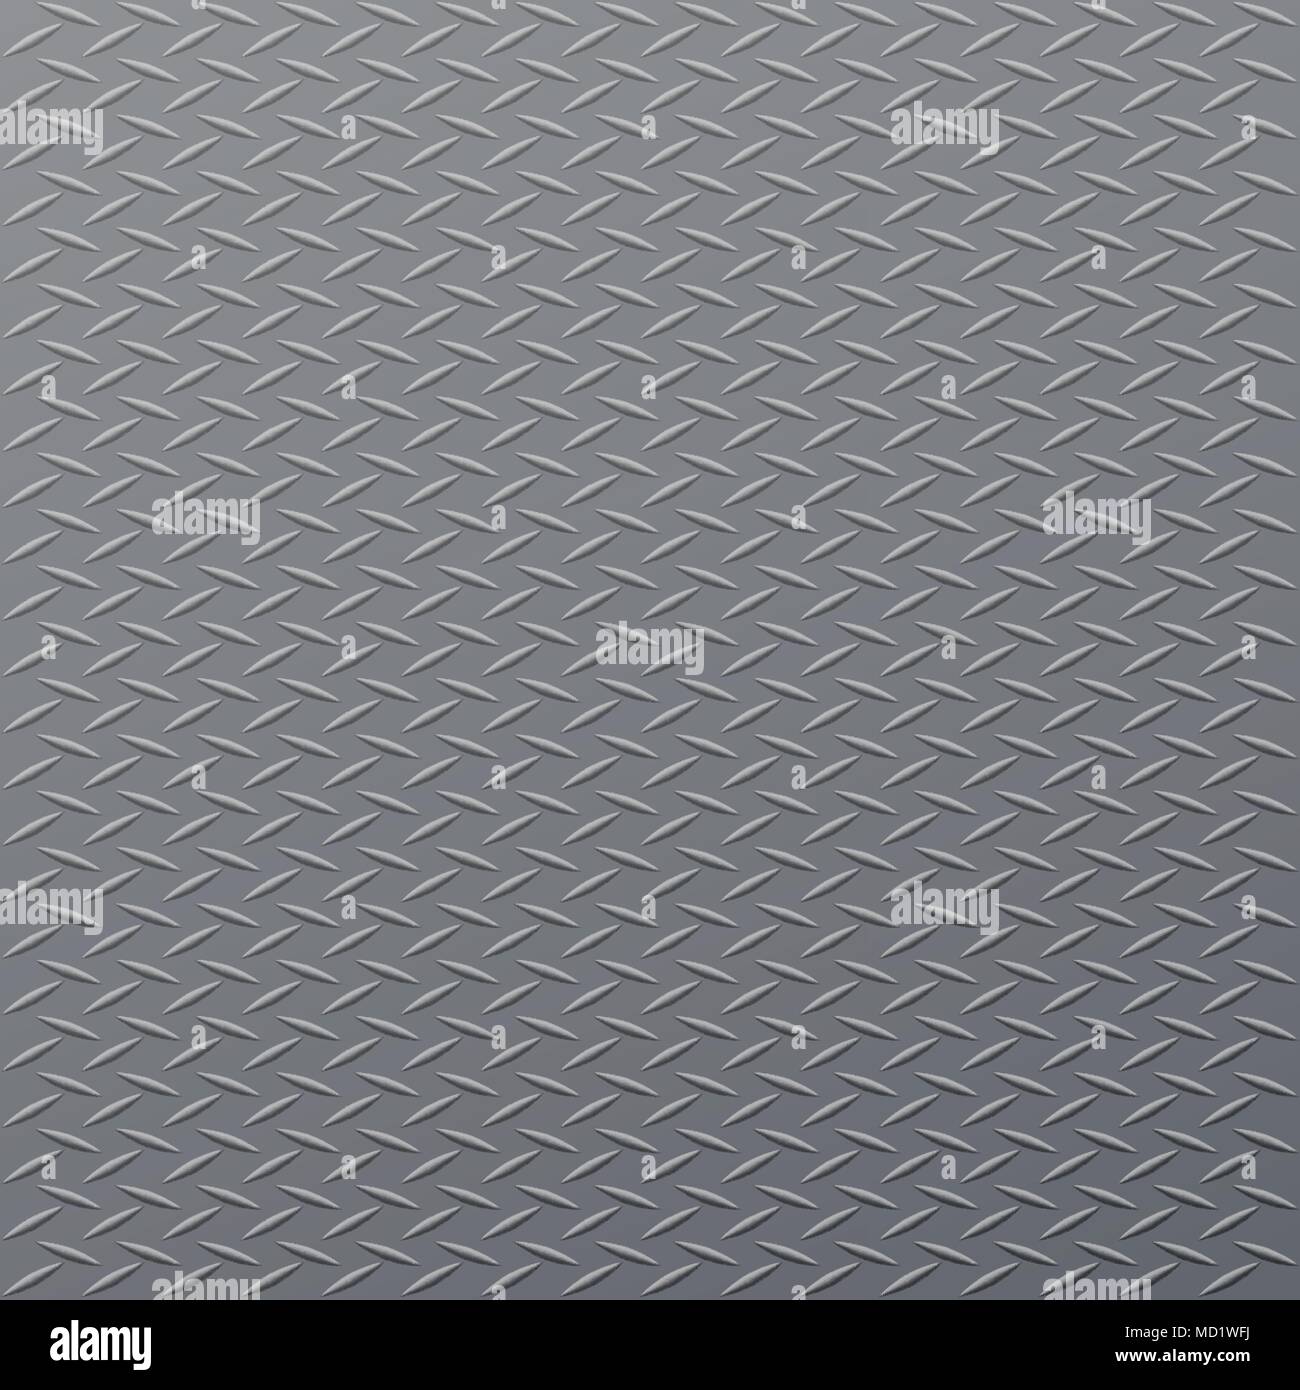 Arrière-plan de plancher en acier gris avec motif de losange Illustration de Vecteur